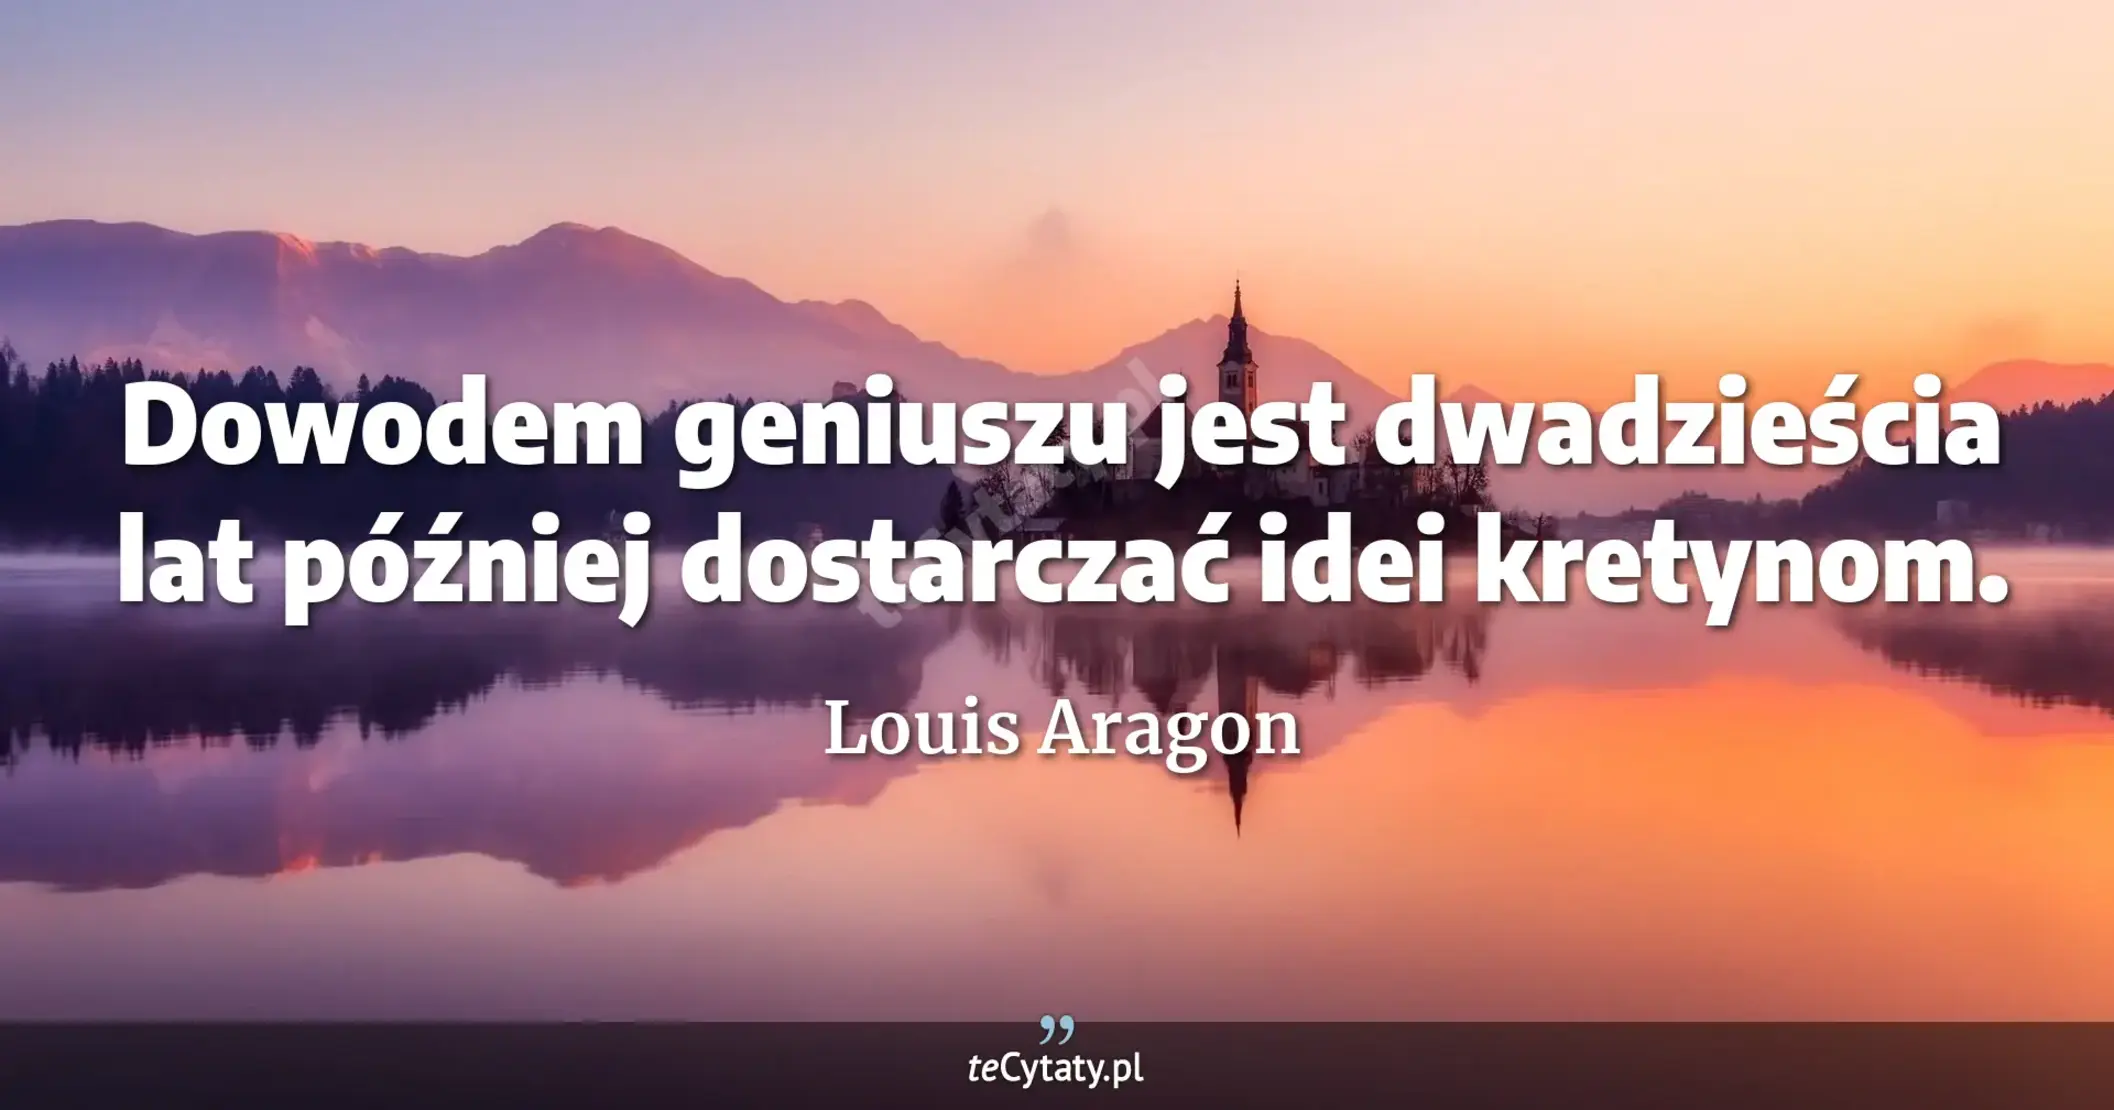 Dowodem geniuszu jest dwadzieścia lat później dostarczać idei kretynom. - Louis Aragon